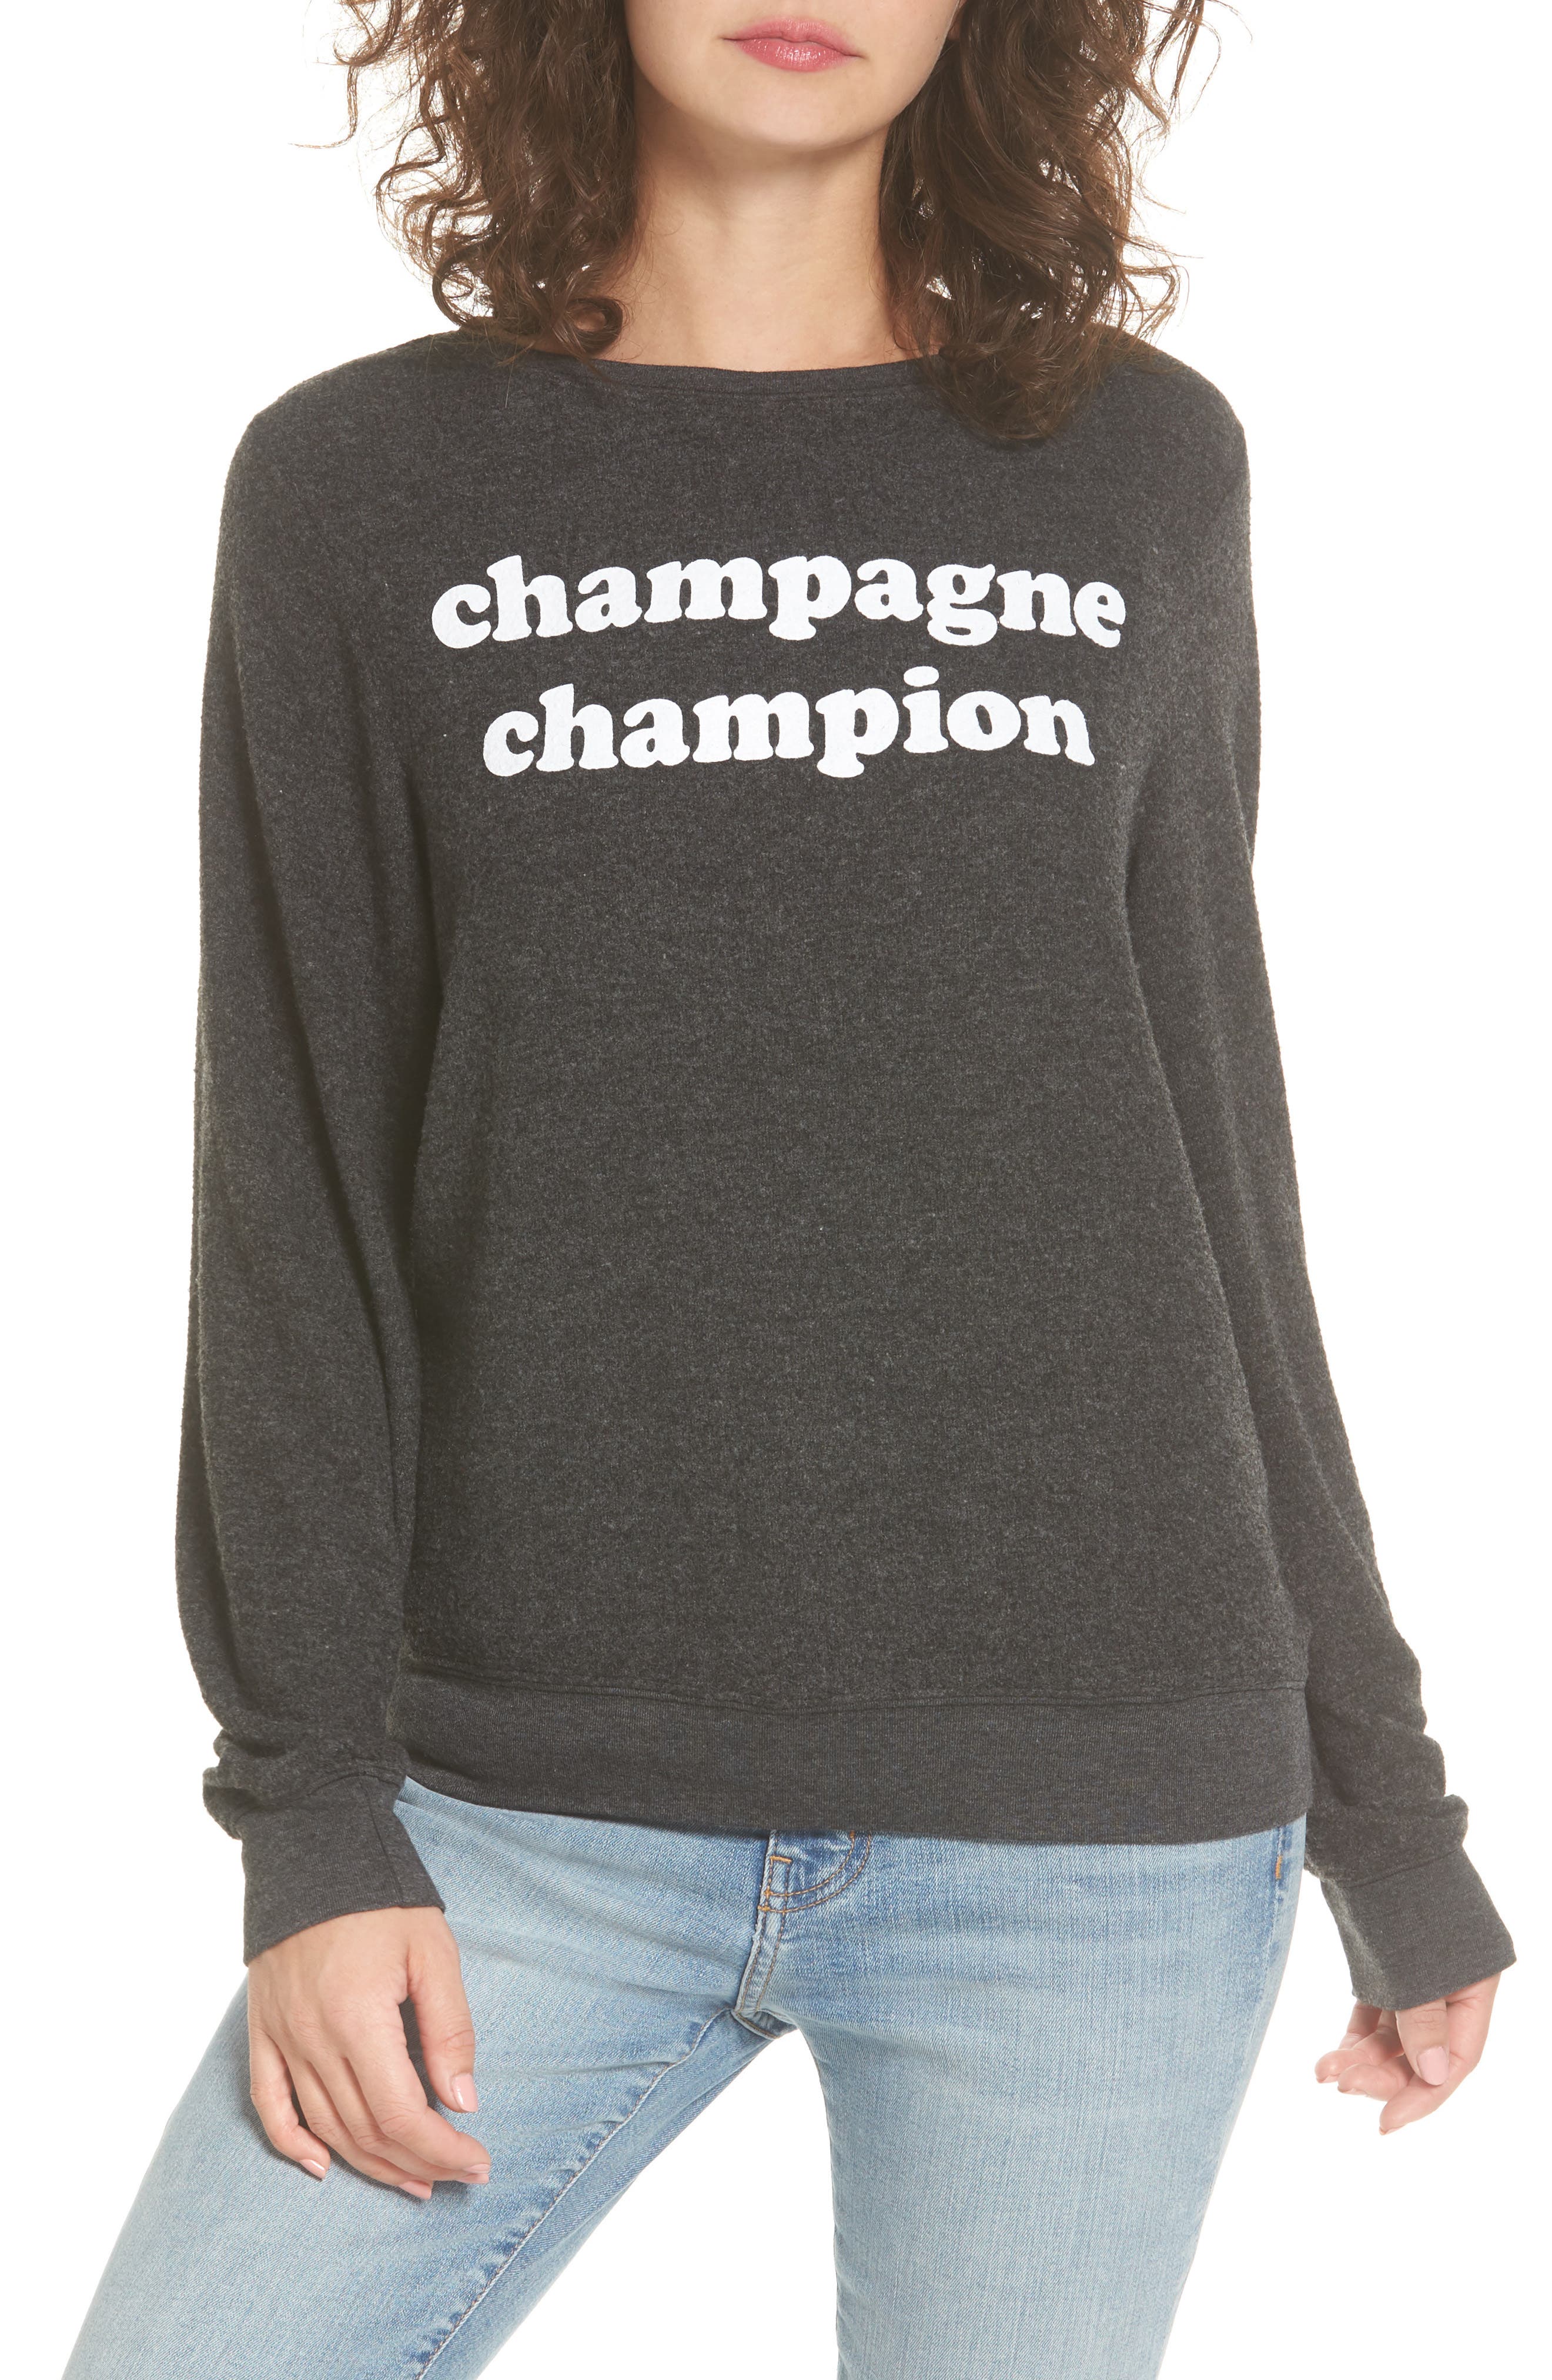 champagne sweatshirt champion